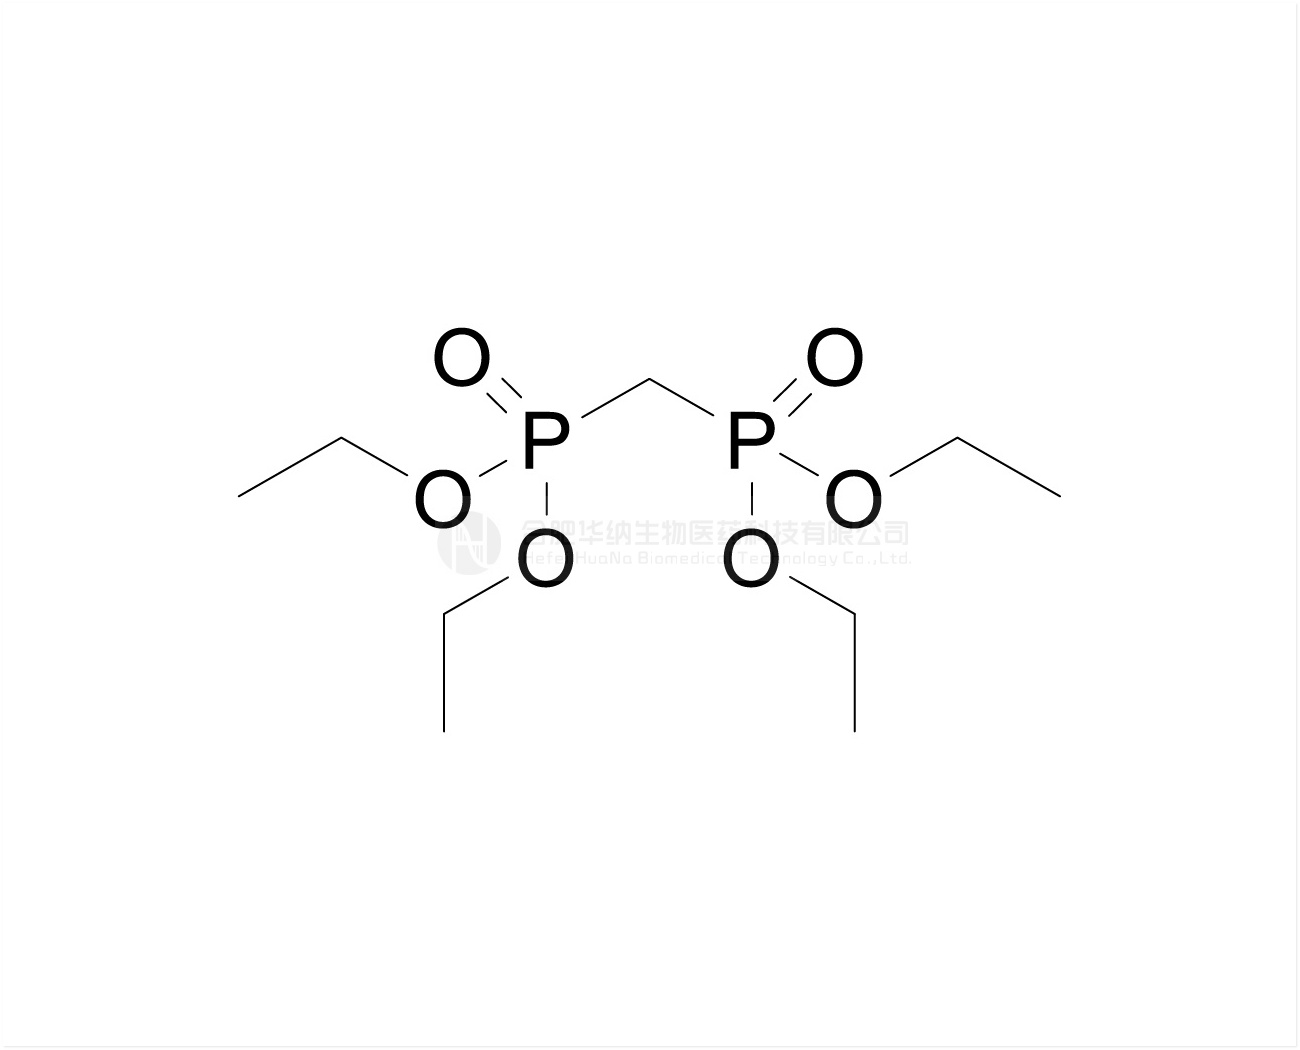 Tetraethyl methylenebis(phosphonate)